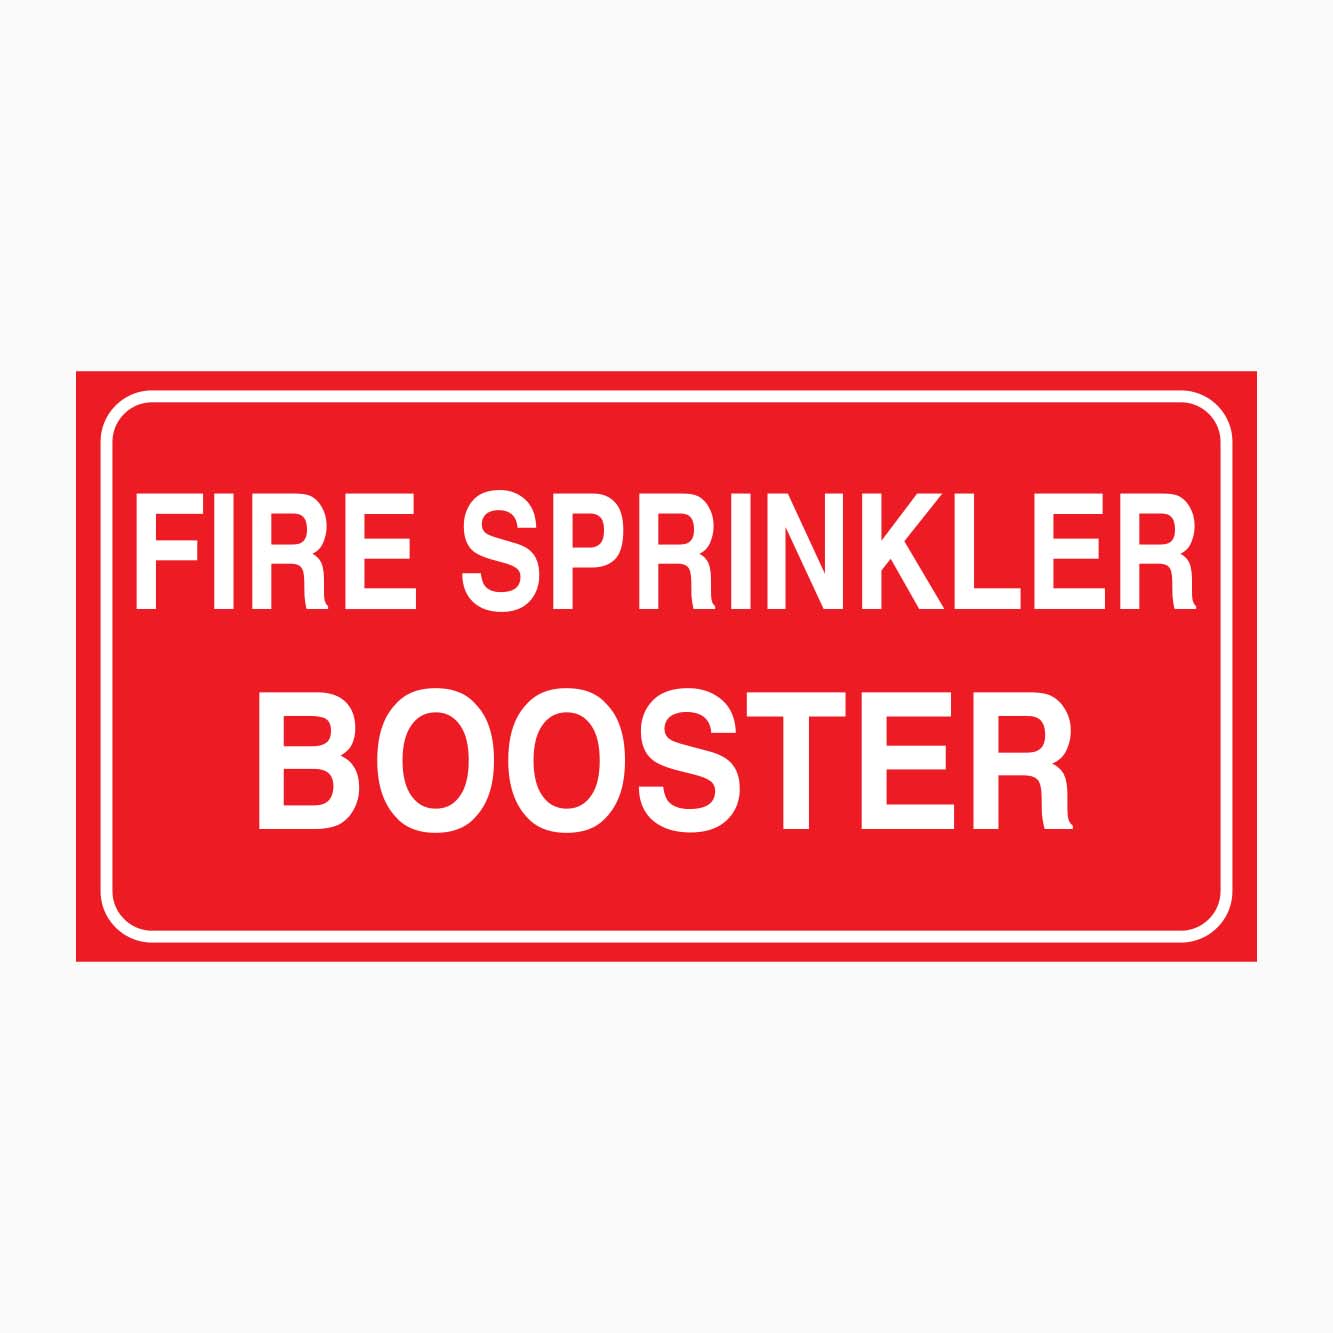 FIRE SPRINKLER BOOSTER SIGN - GET SIGNS